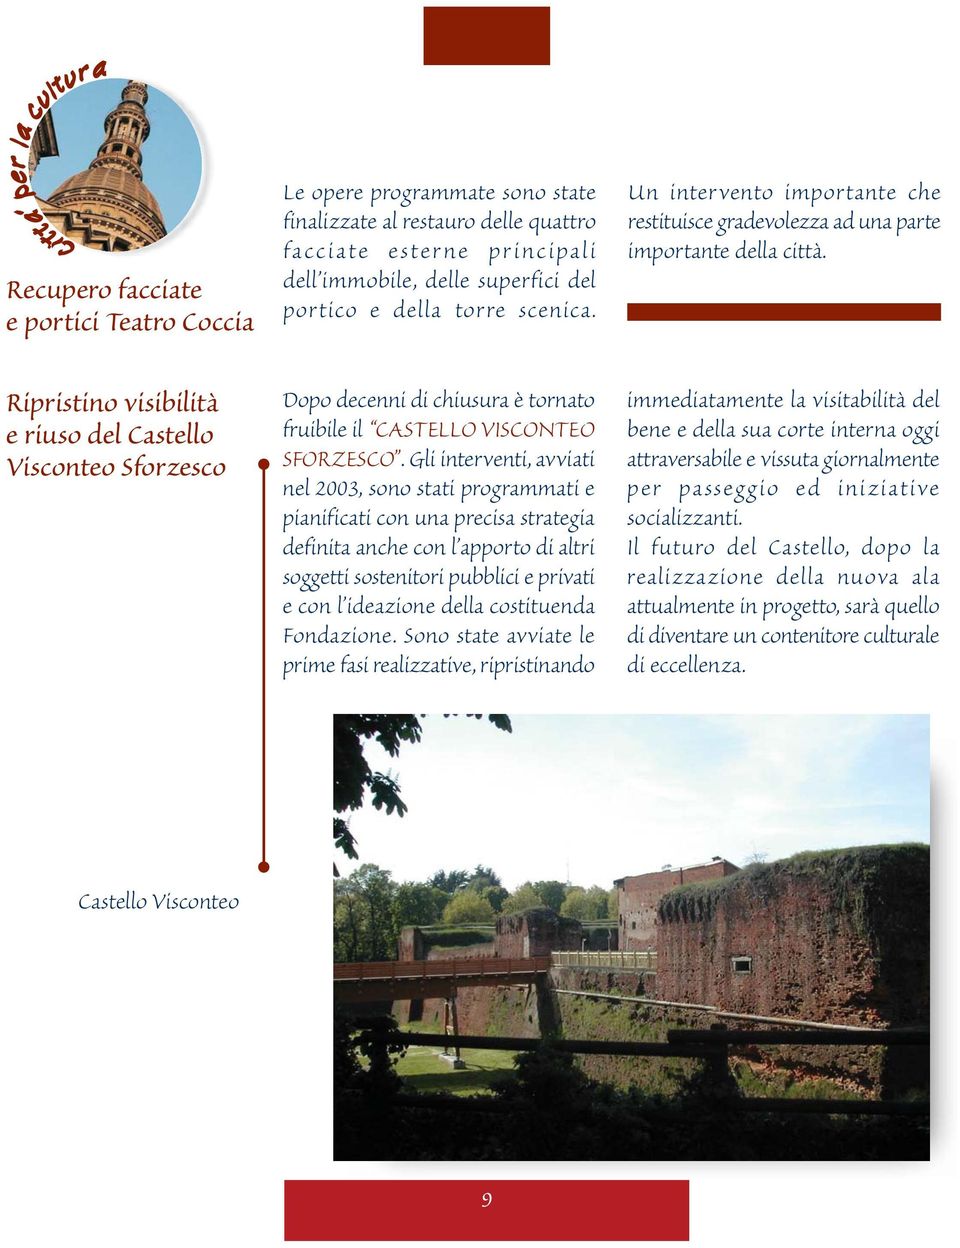 Ripristino visibilità e riuso del Castello Visconteo Sforzesco Dopo decenni di chiusura è tornato fruibile il CASTELLO VISCONTEO SFORZESCO.